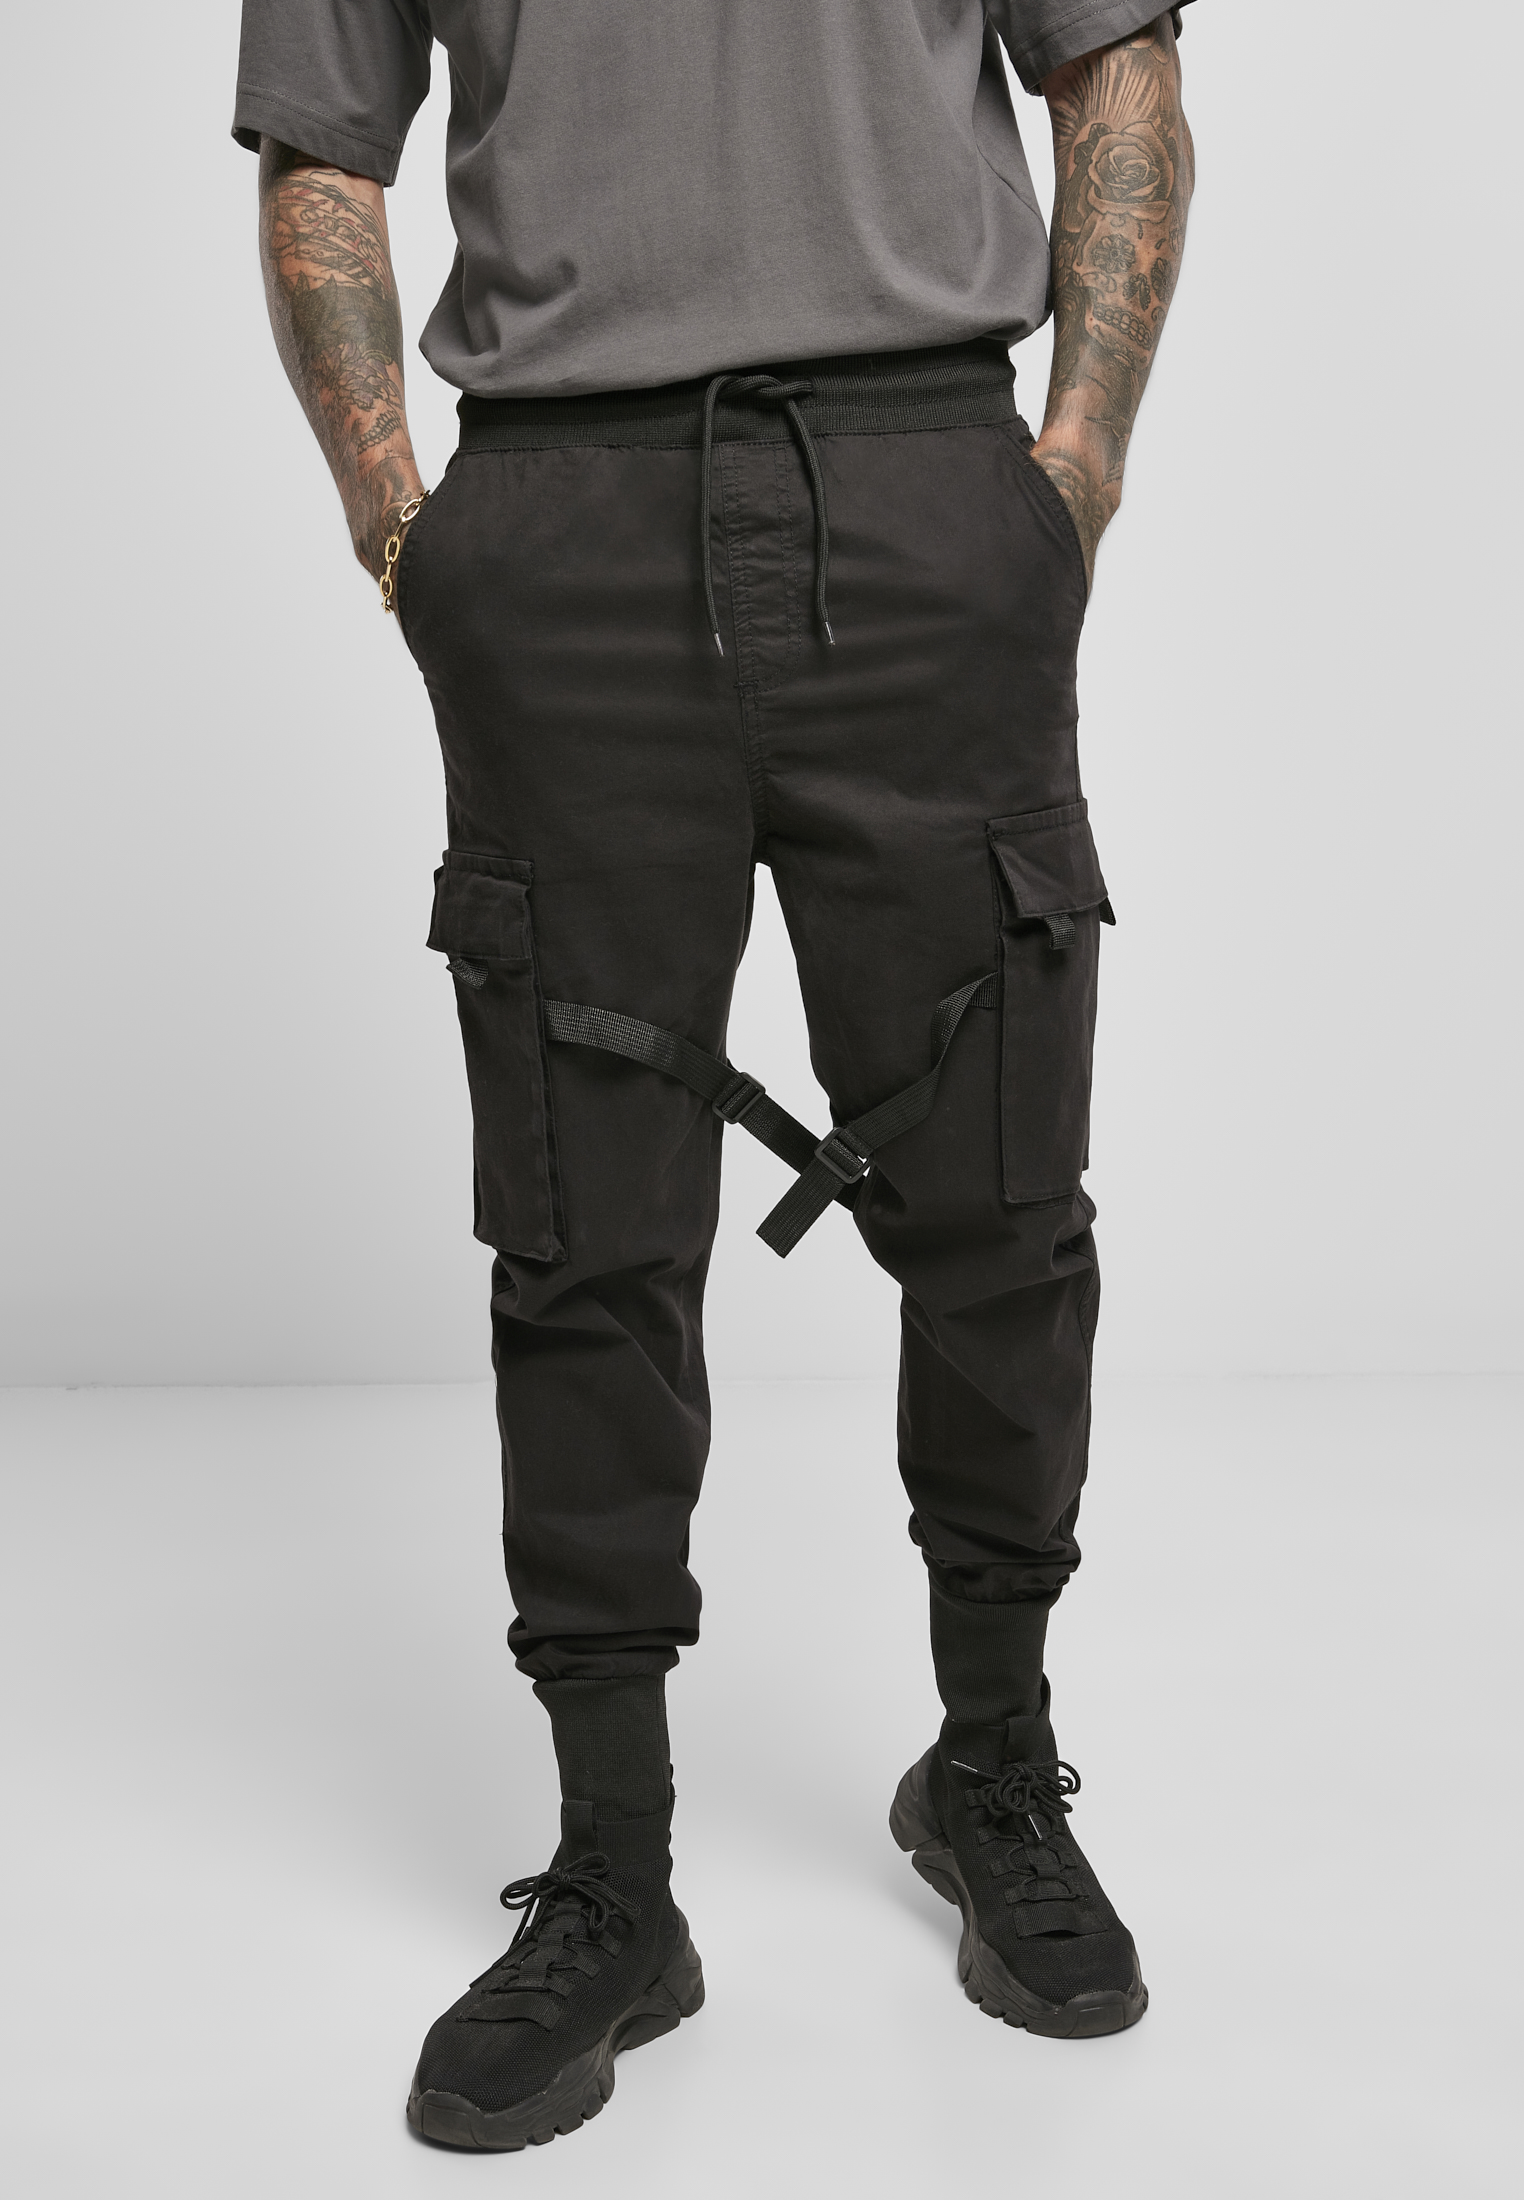 Tactical pants black